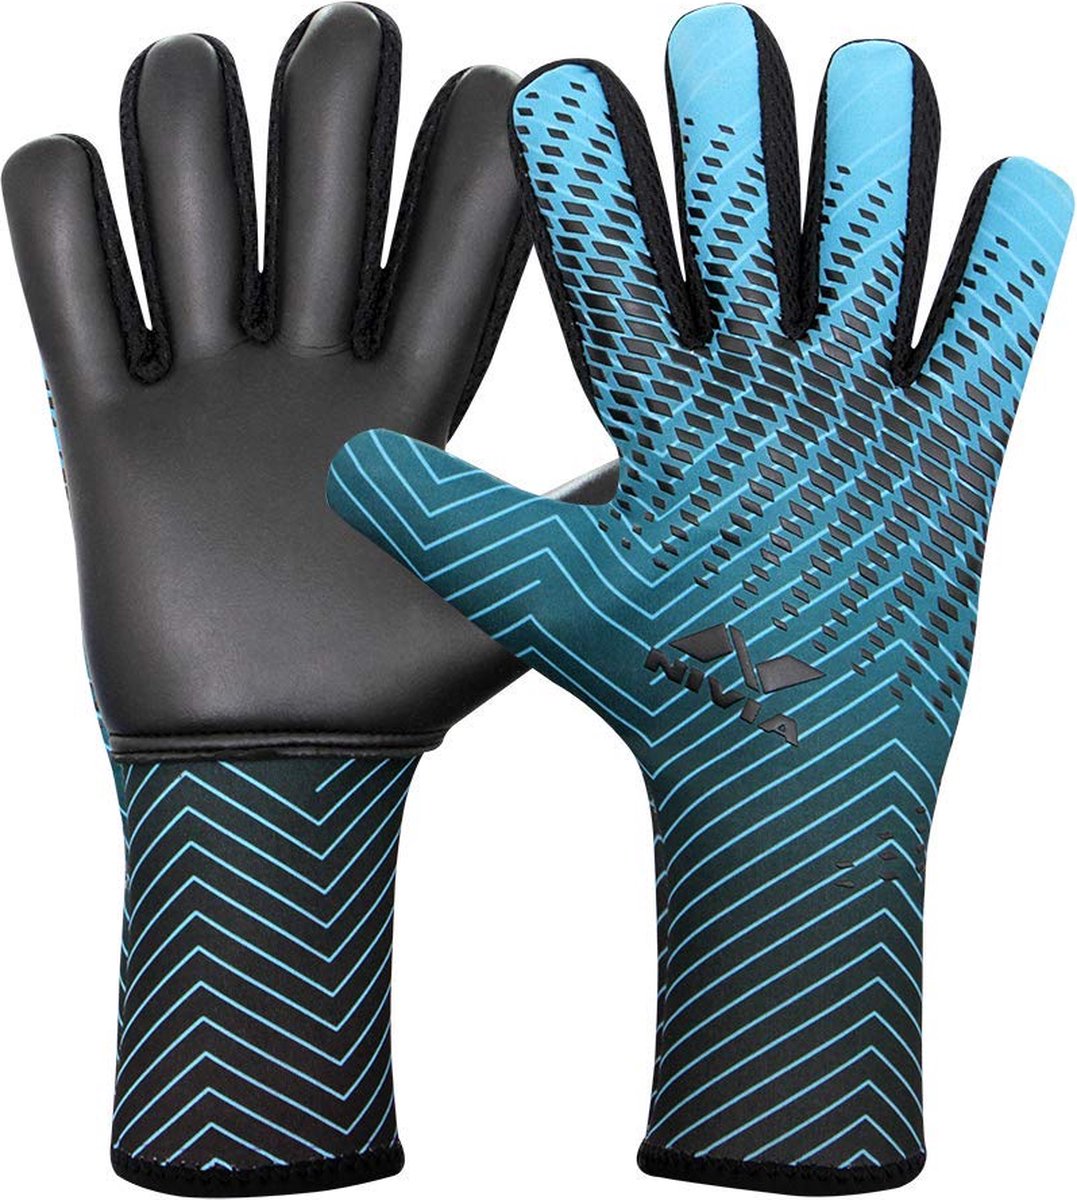 Nivia Force Keepershandschoenen (Blauw/Zwart) - Maat - Groot